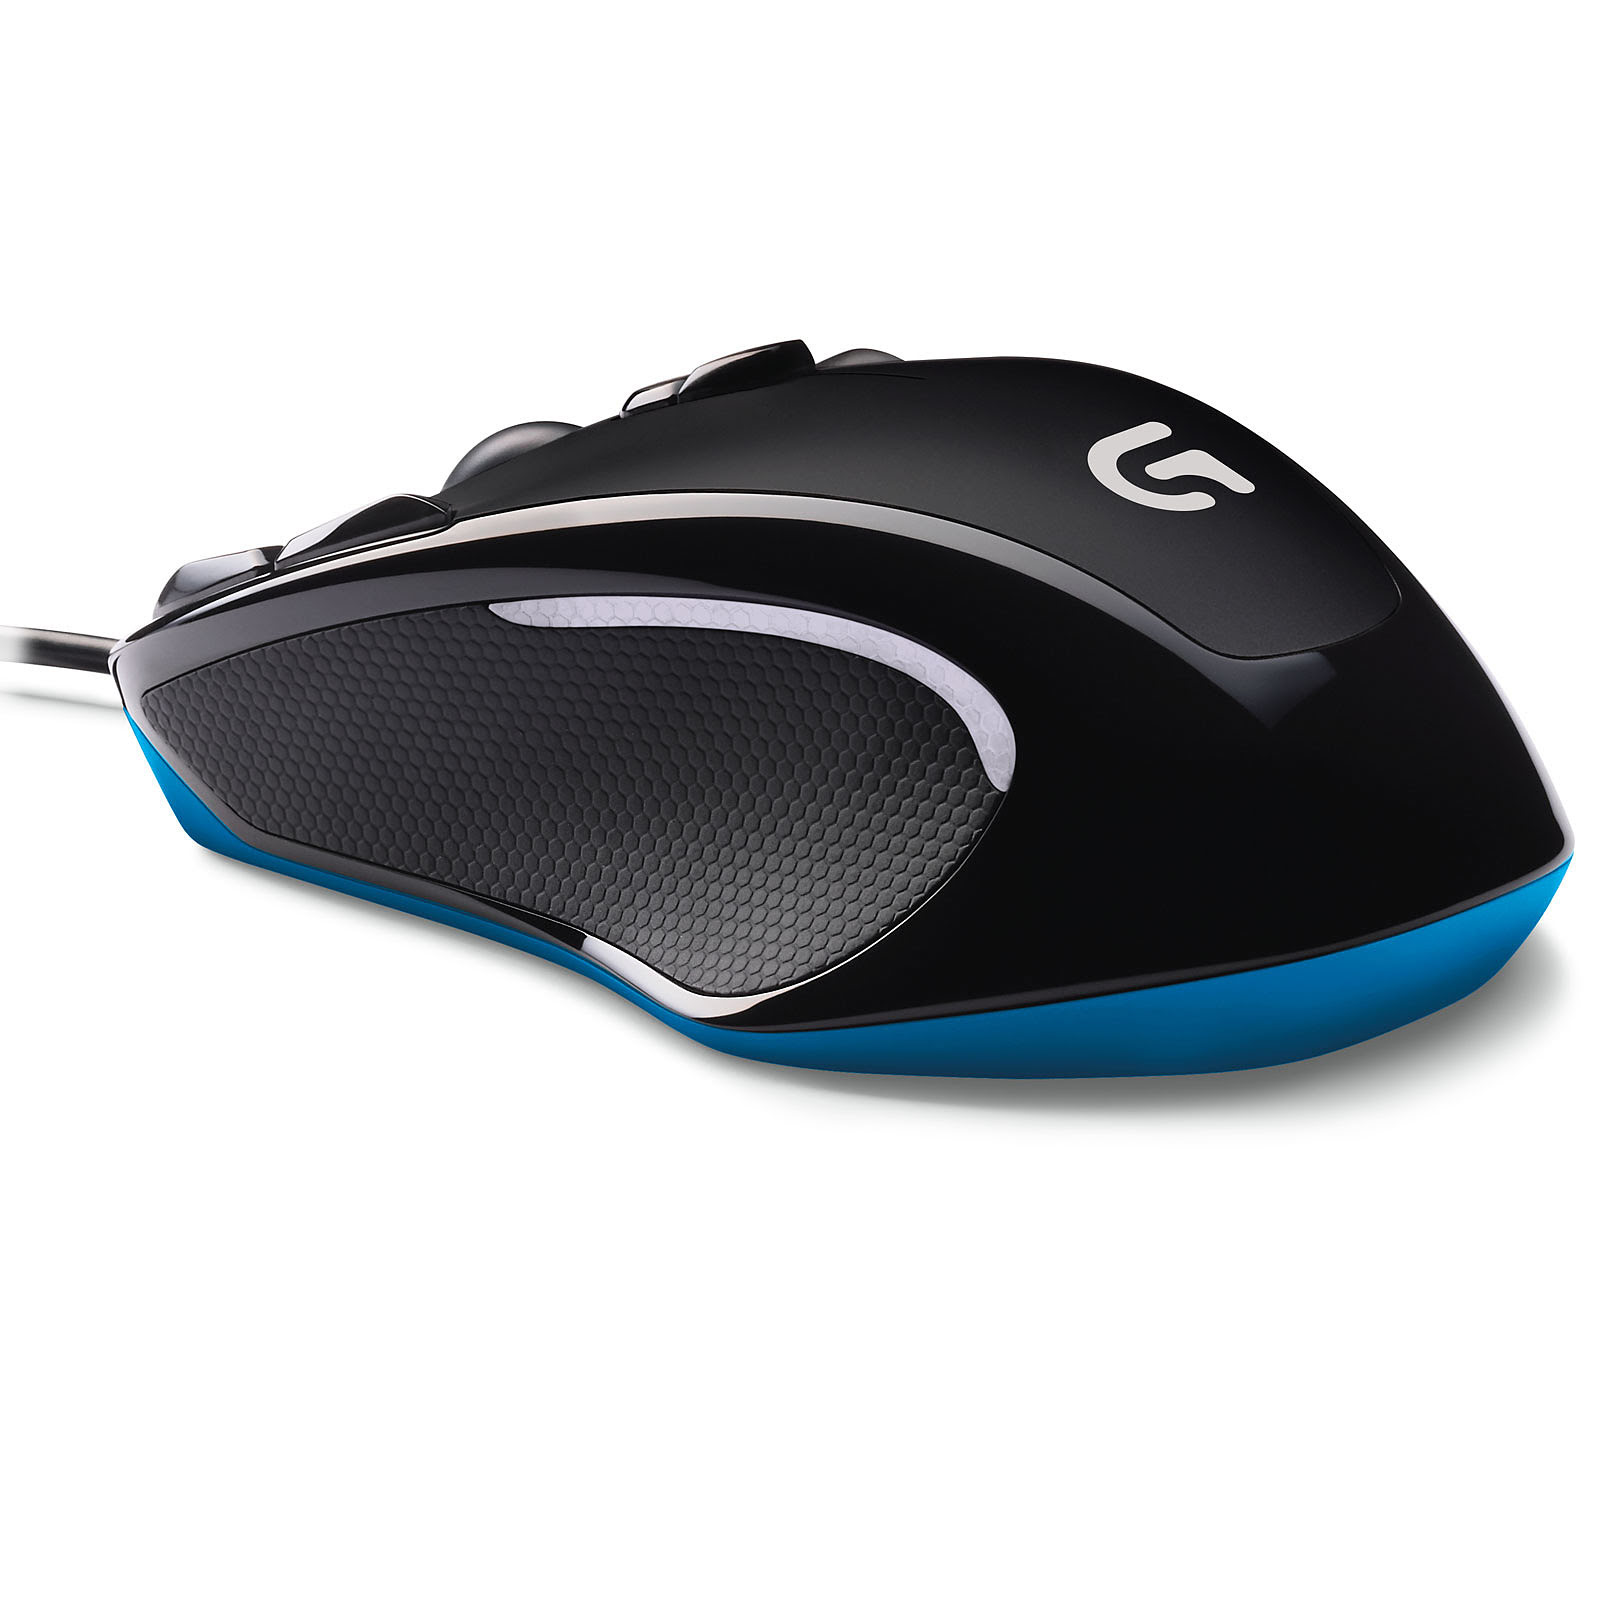  G300s Gaming Mouse (910-004346 **) - Achat / Vente Souris PC sur Picata.fr - 2